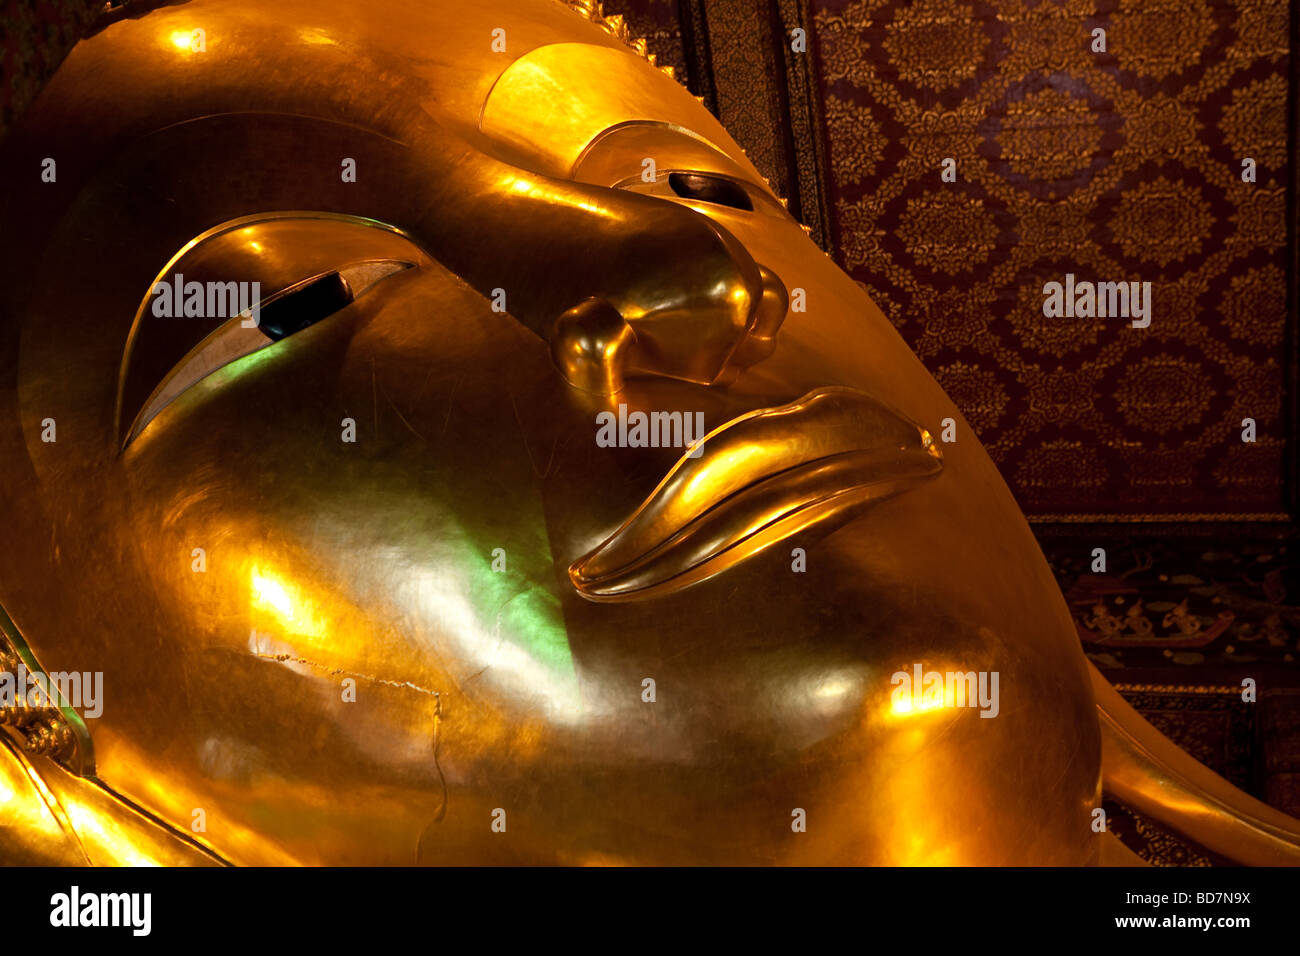 Buda reclinado en el templo Wat Pho Bangkok Thailand Foto de stock